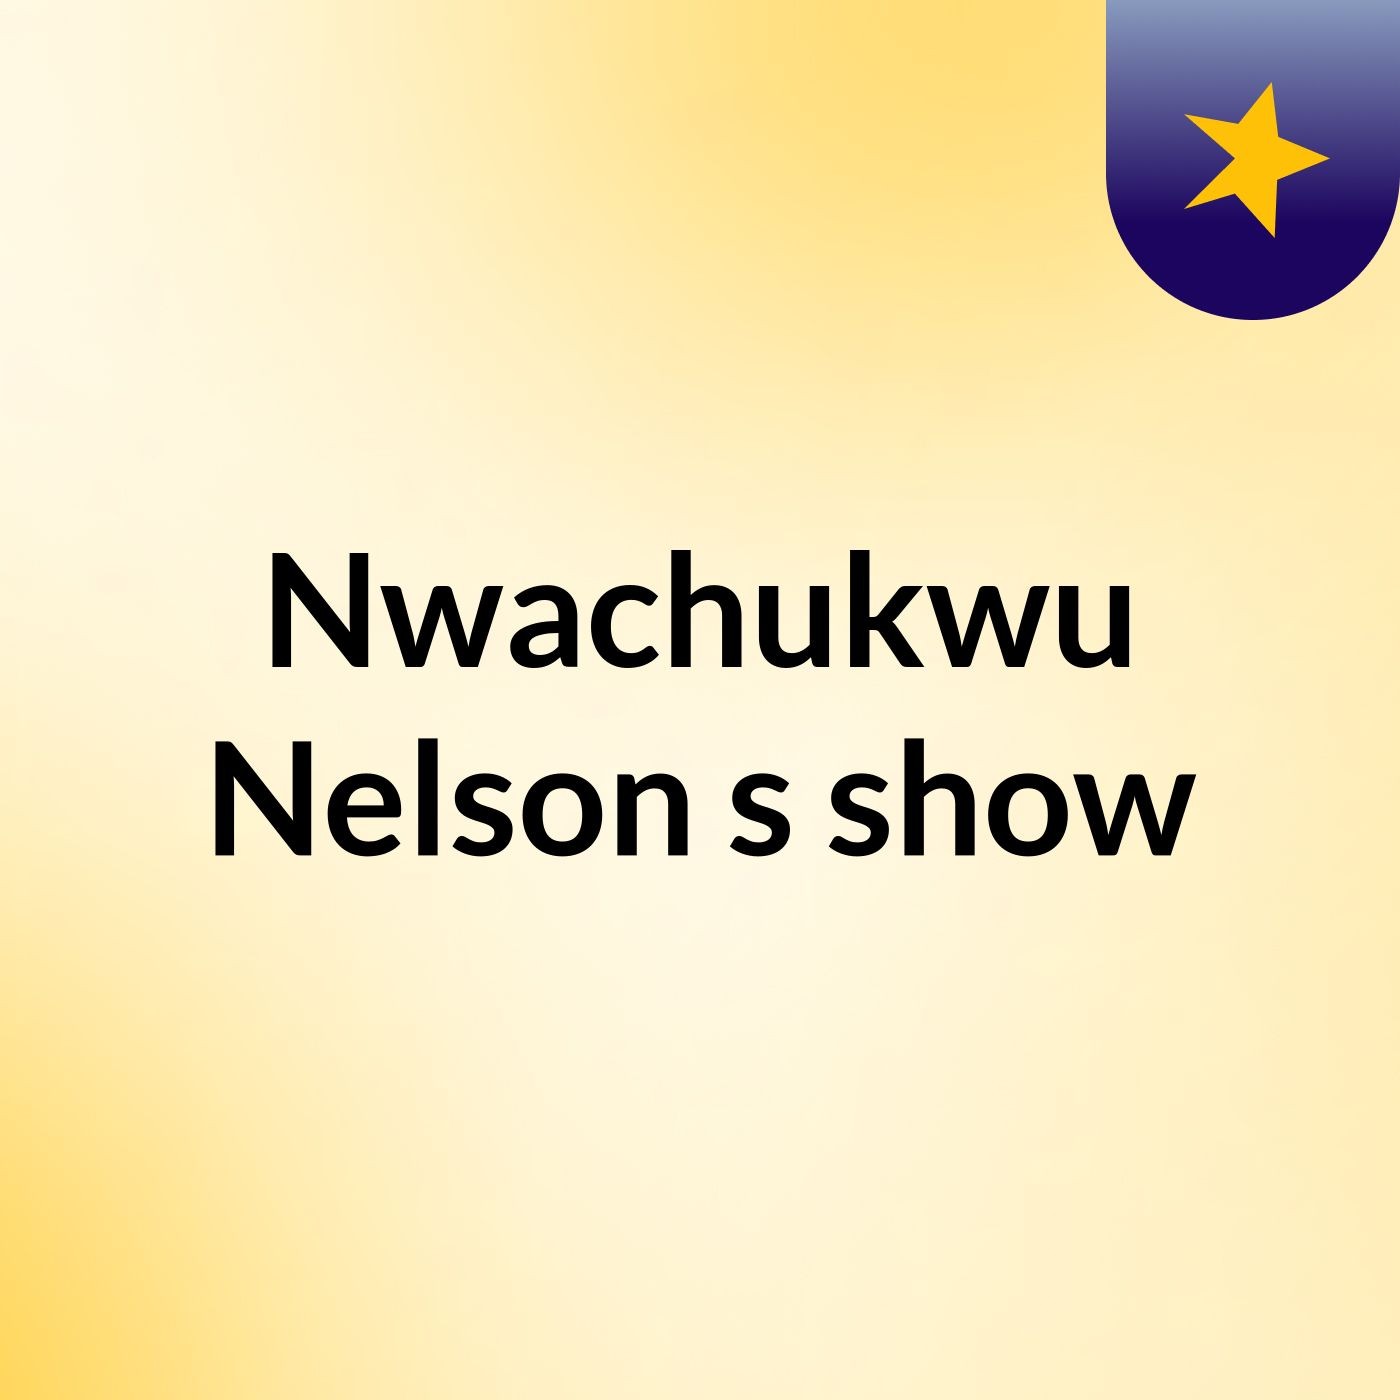 Nwachukwu Nelson's show